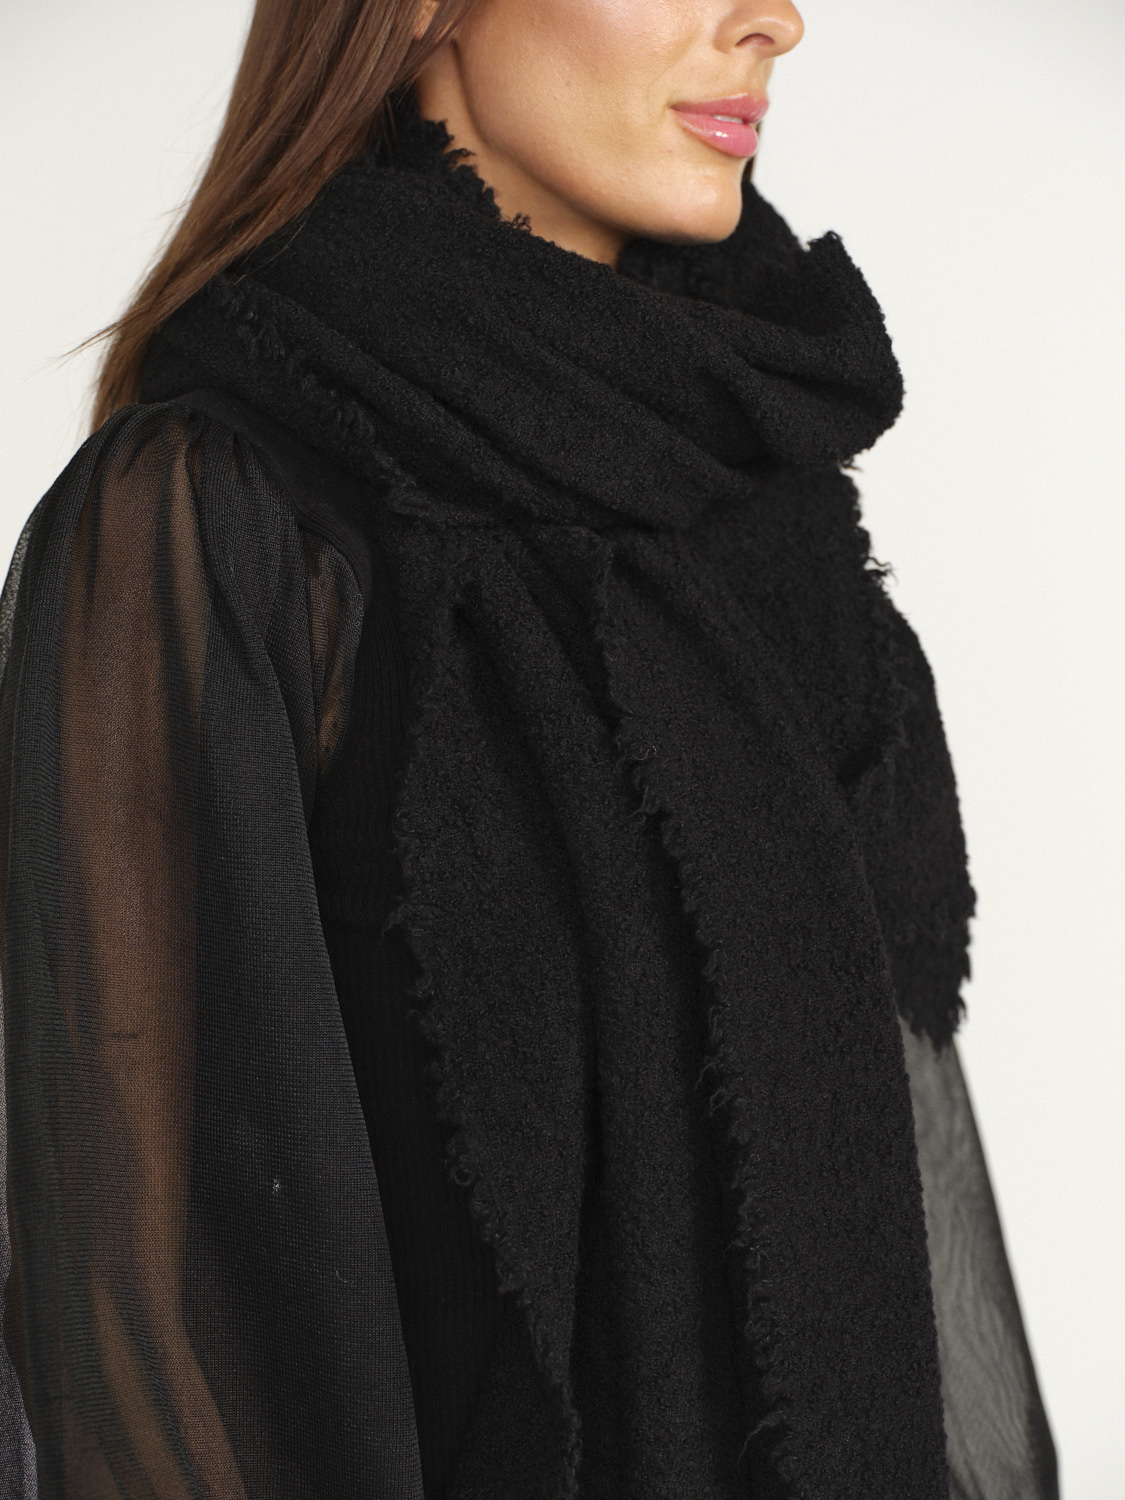 Faliero Sarti Alexia – Rechteckiger Schal aus Wolle und Cashmere grau One Size